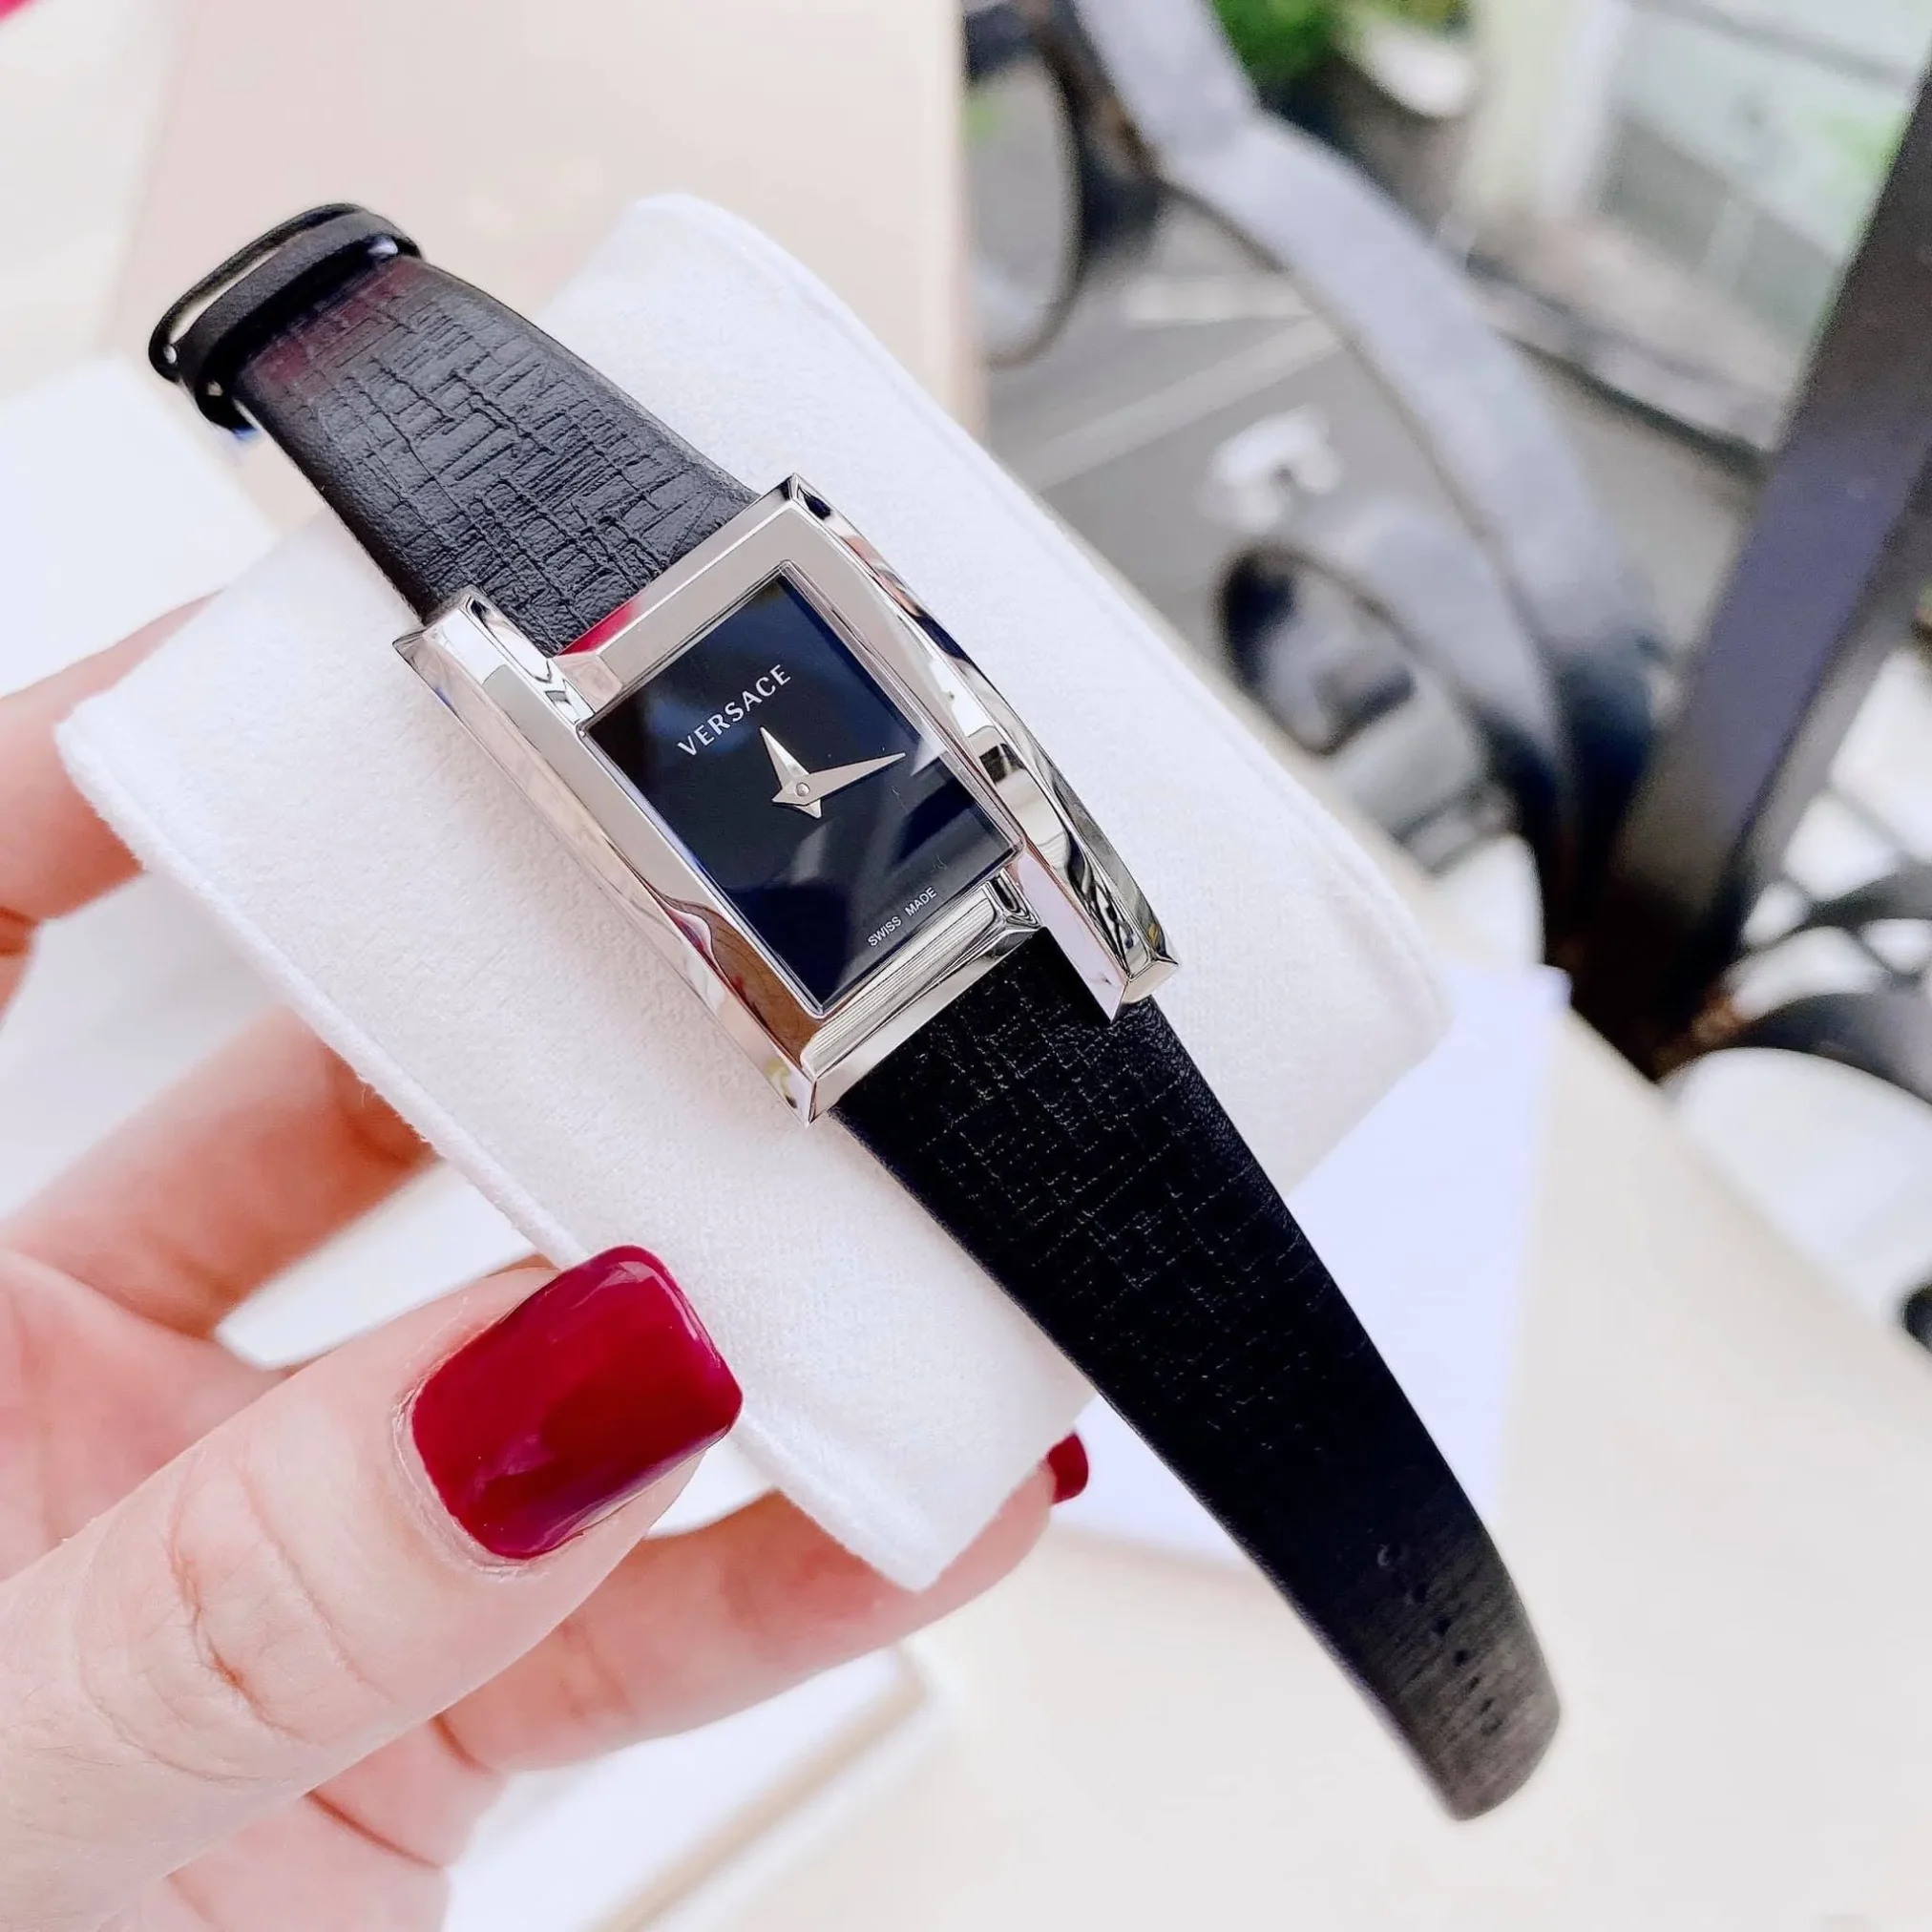 Đồng Hồ Versace Greca Icon Black Watch VELU00119 mặt số màu đen. Thân vỏ bằng thép. Dây đeo bằng da.